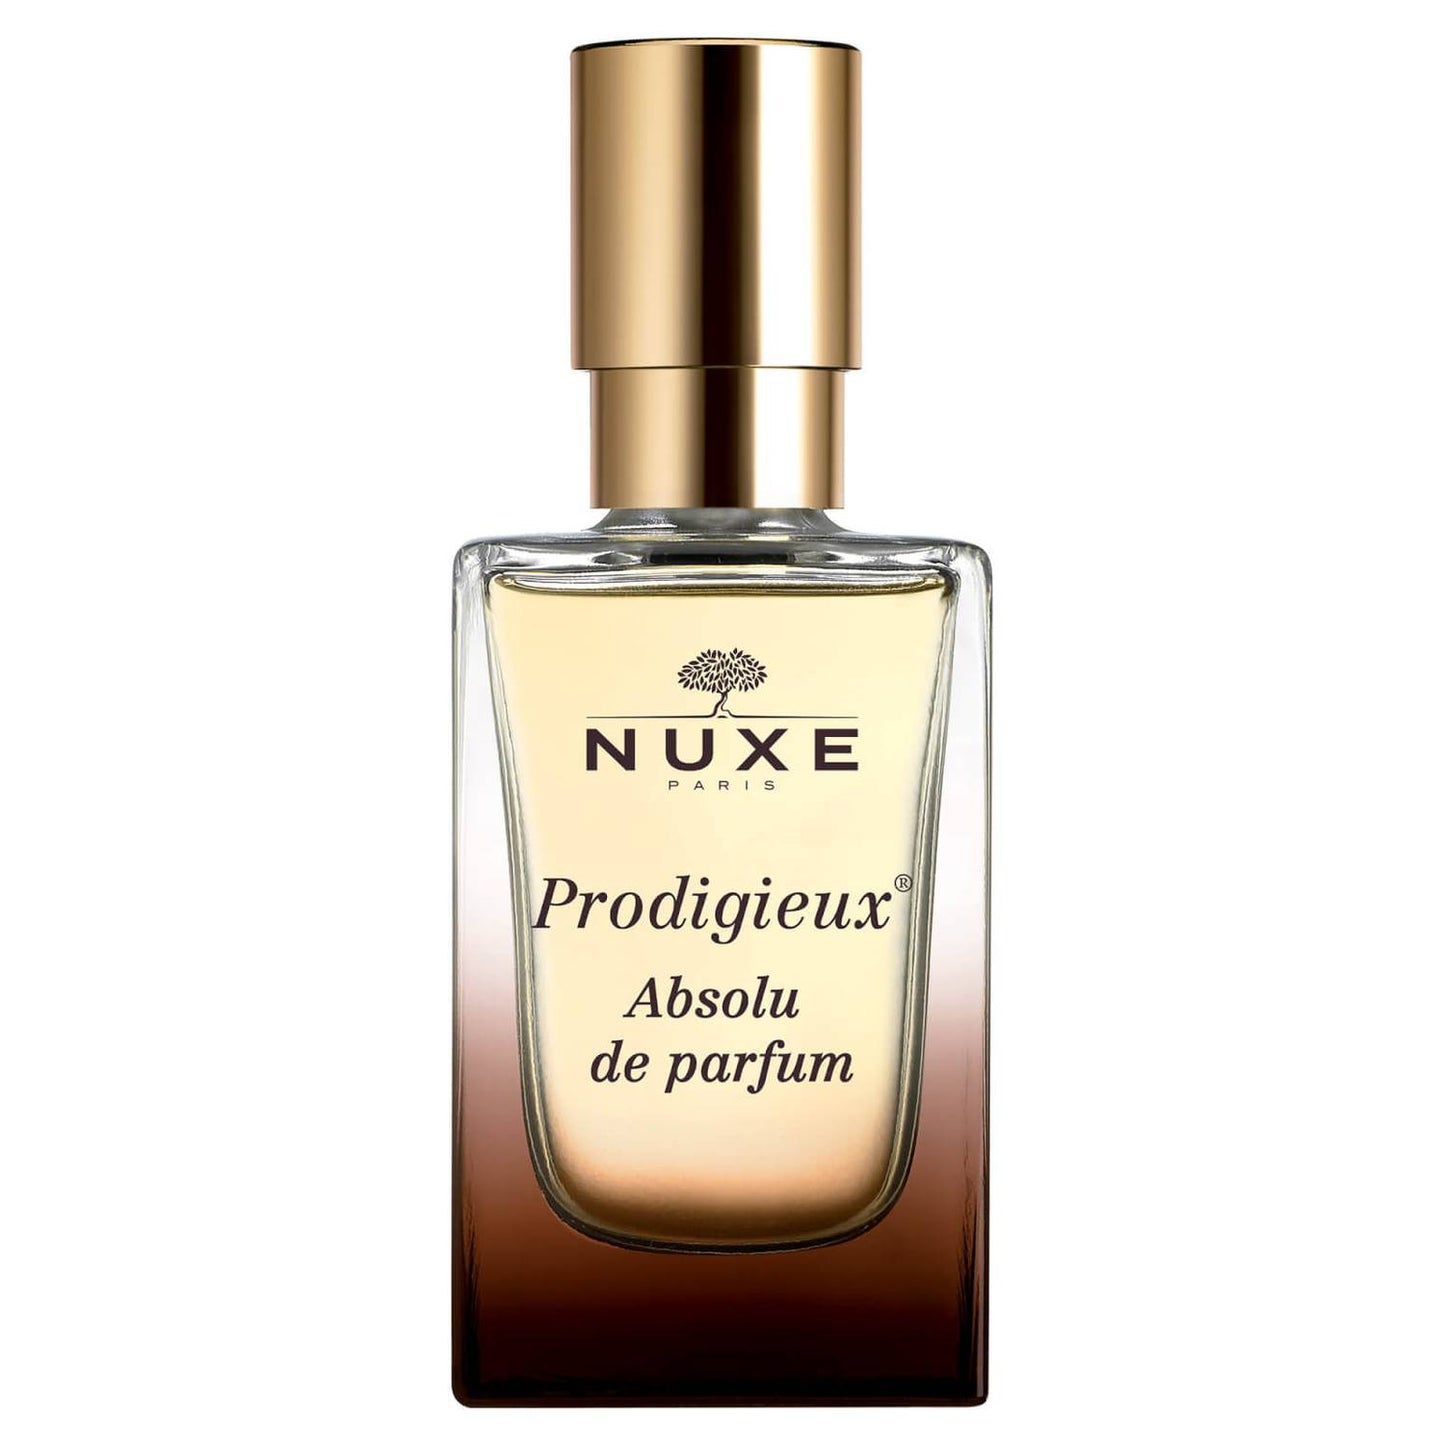 Nuxe Prodigieux® Absolu de parfum 30 ml